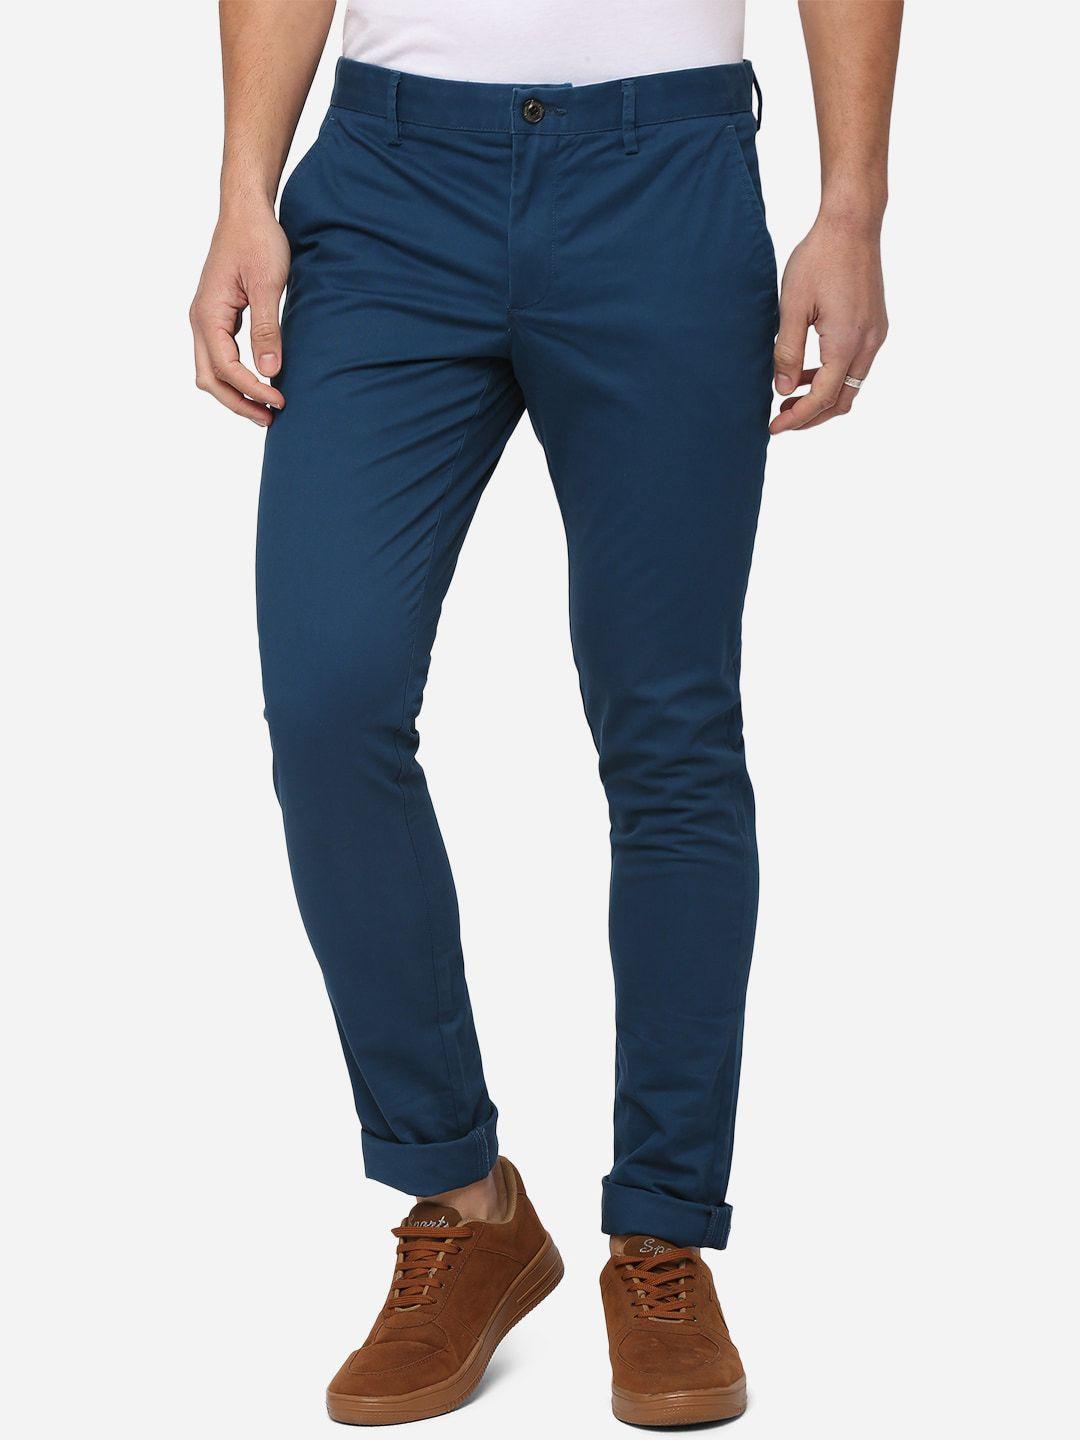 jade-blue-men-blue-slim-fit-pure-cotton-trousers